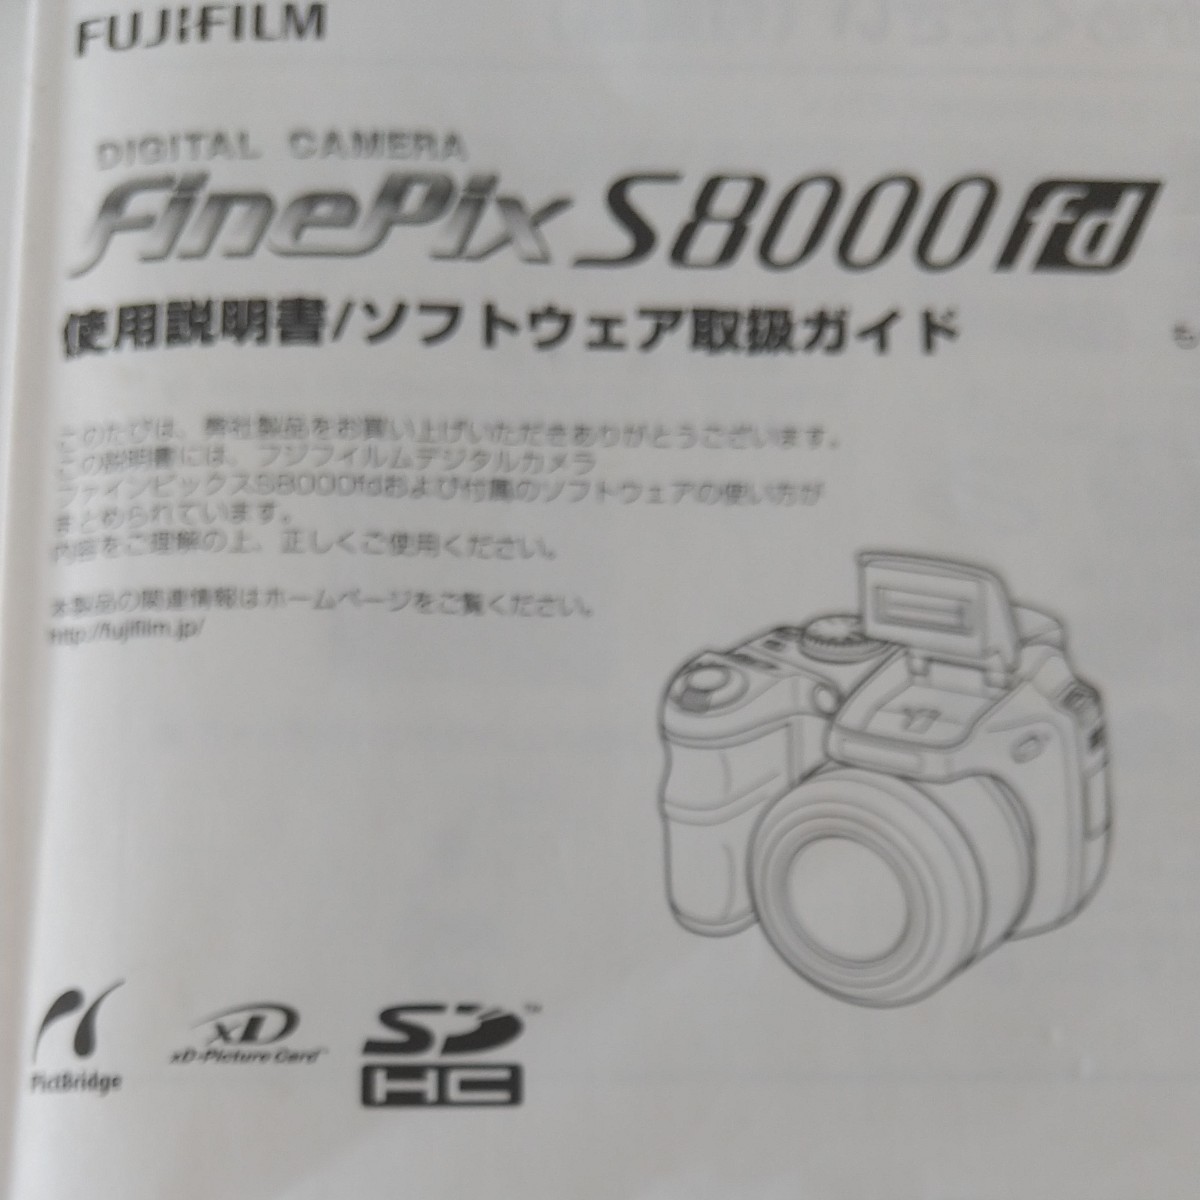  セレ様専用ページFUJIFILM デジタルカメラ  FinePix S8000fd 富士フイルム パーティドレス